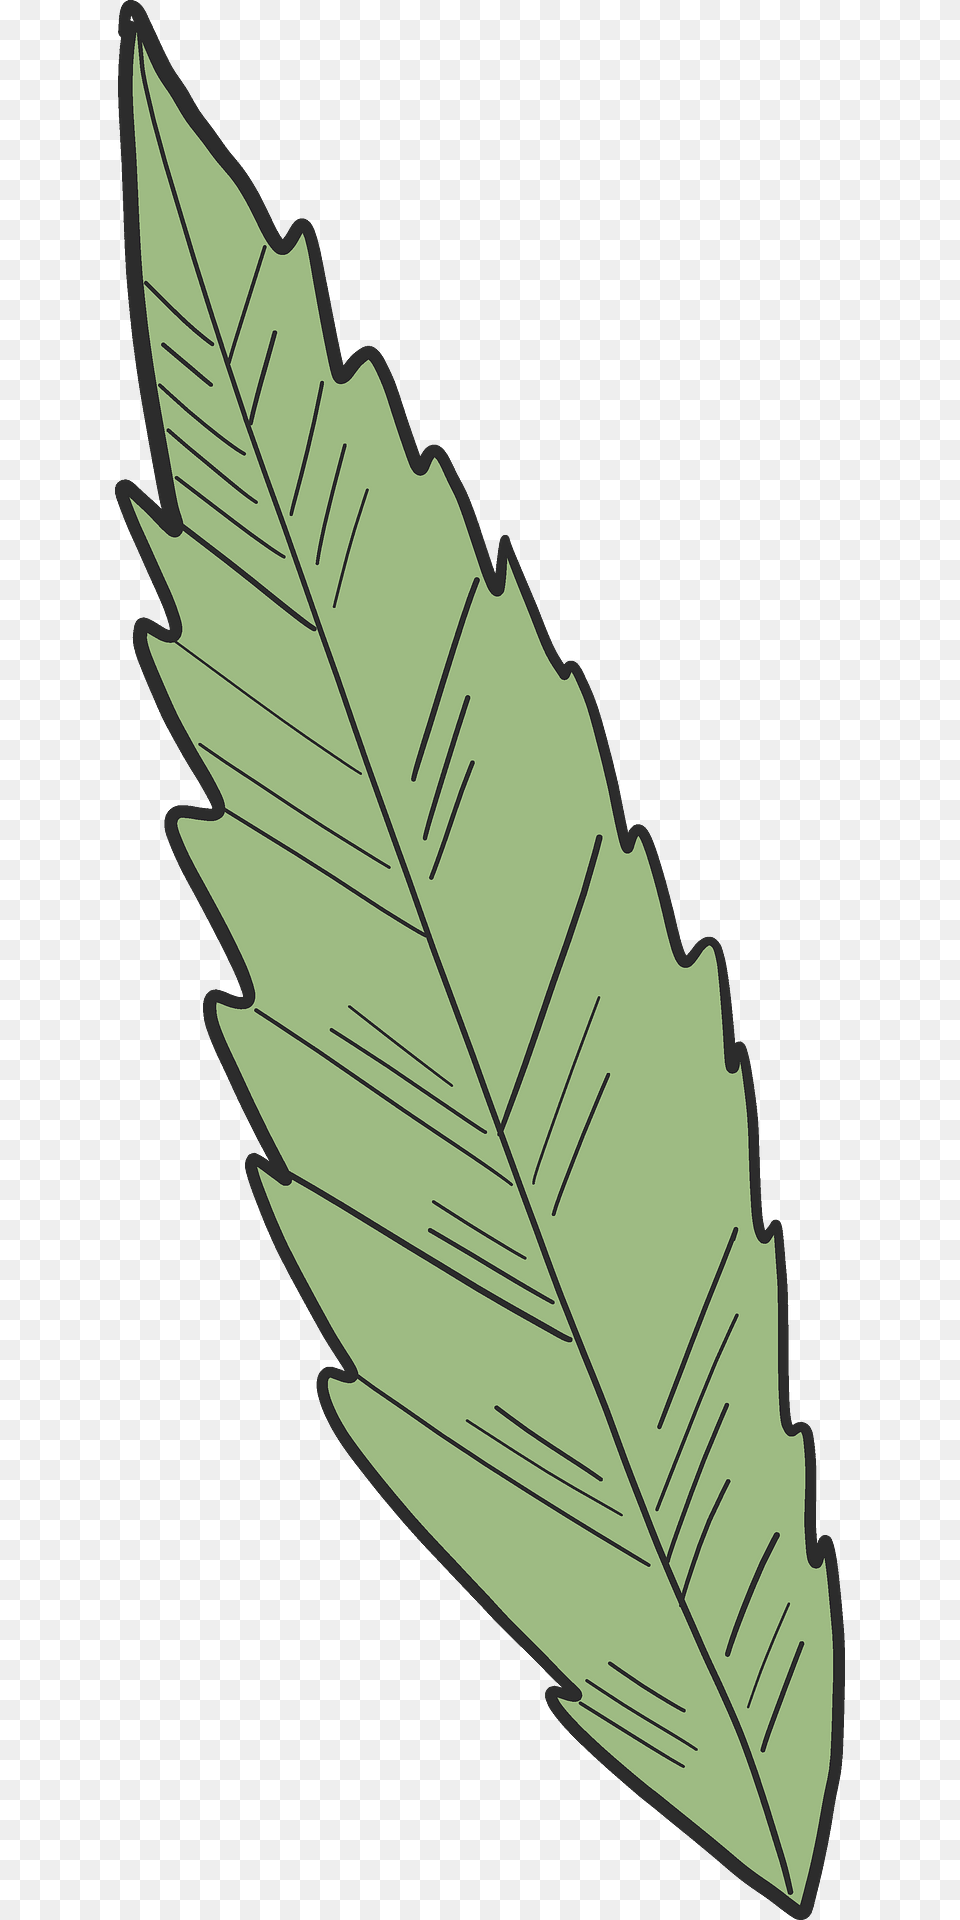 Clip Art, Leaf, Plant, Ammunition, Grenade Free Transparent Png